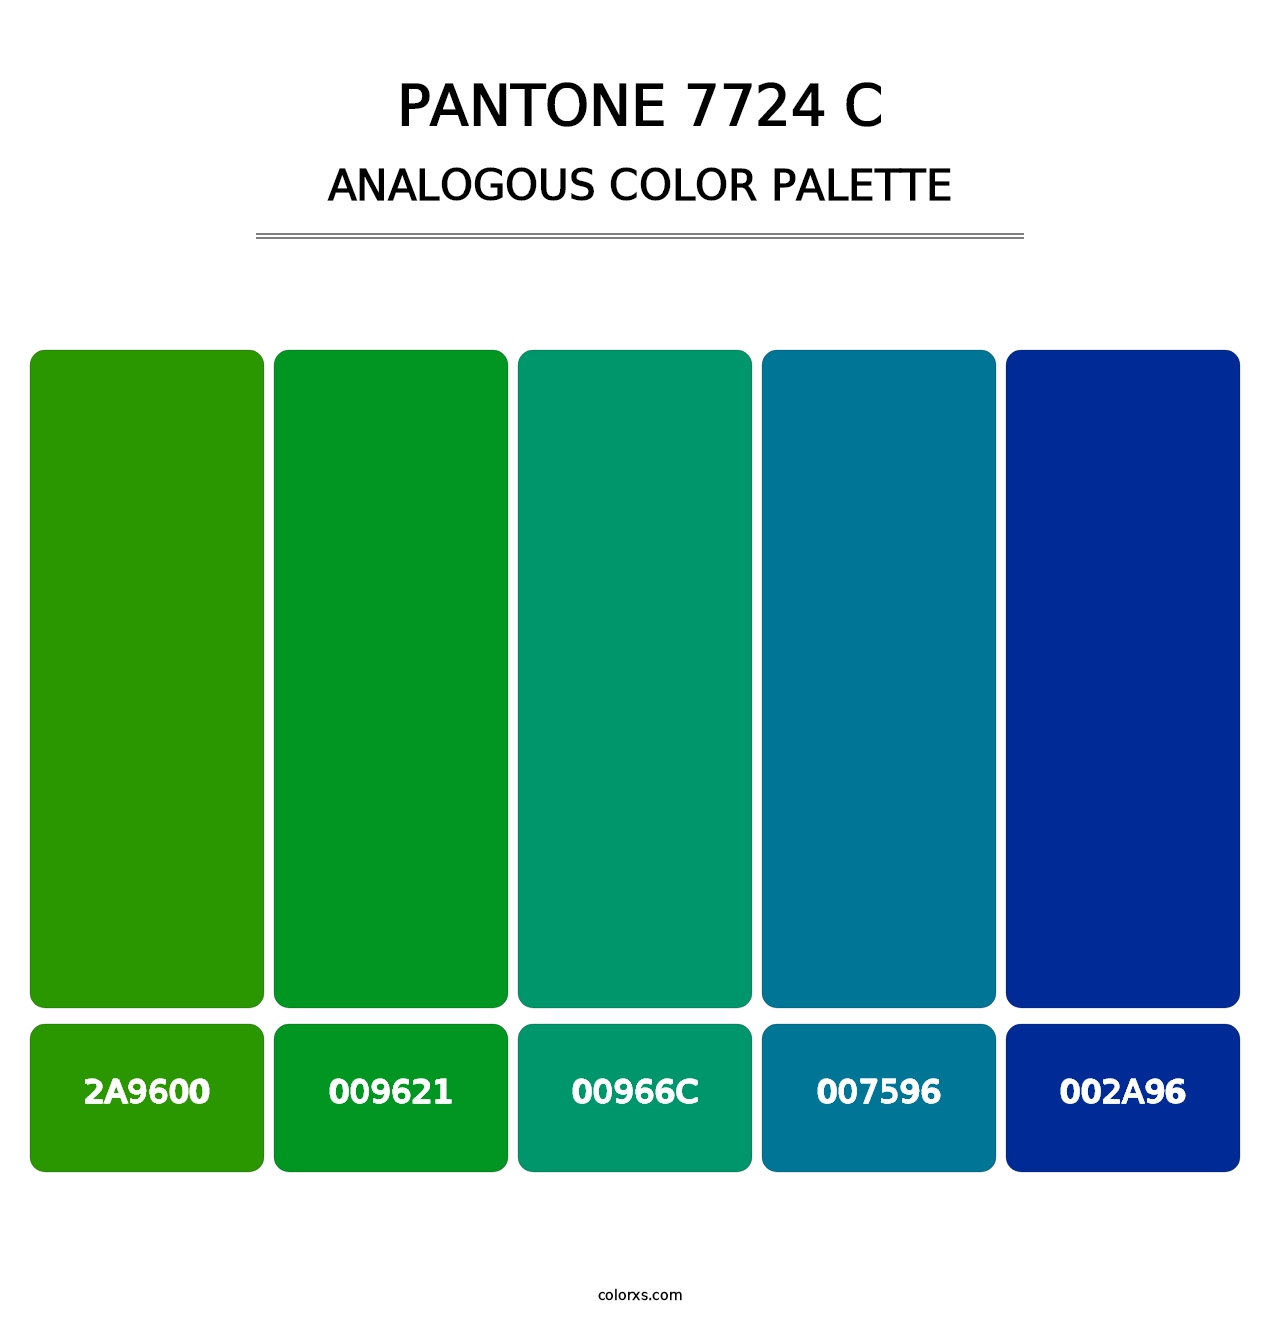 PANTONE 7724 C - Analogous Color Palette